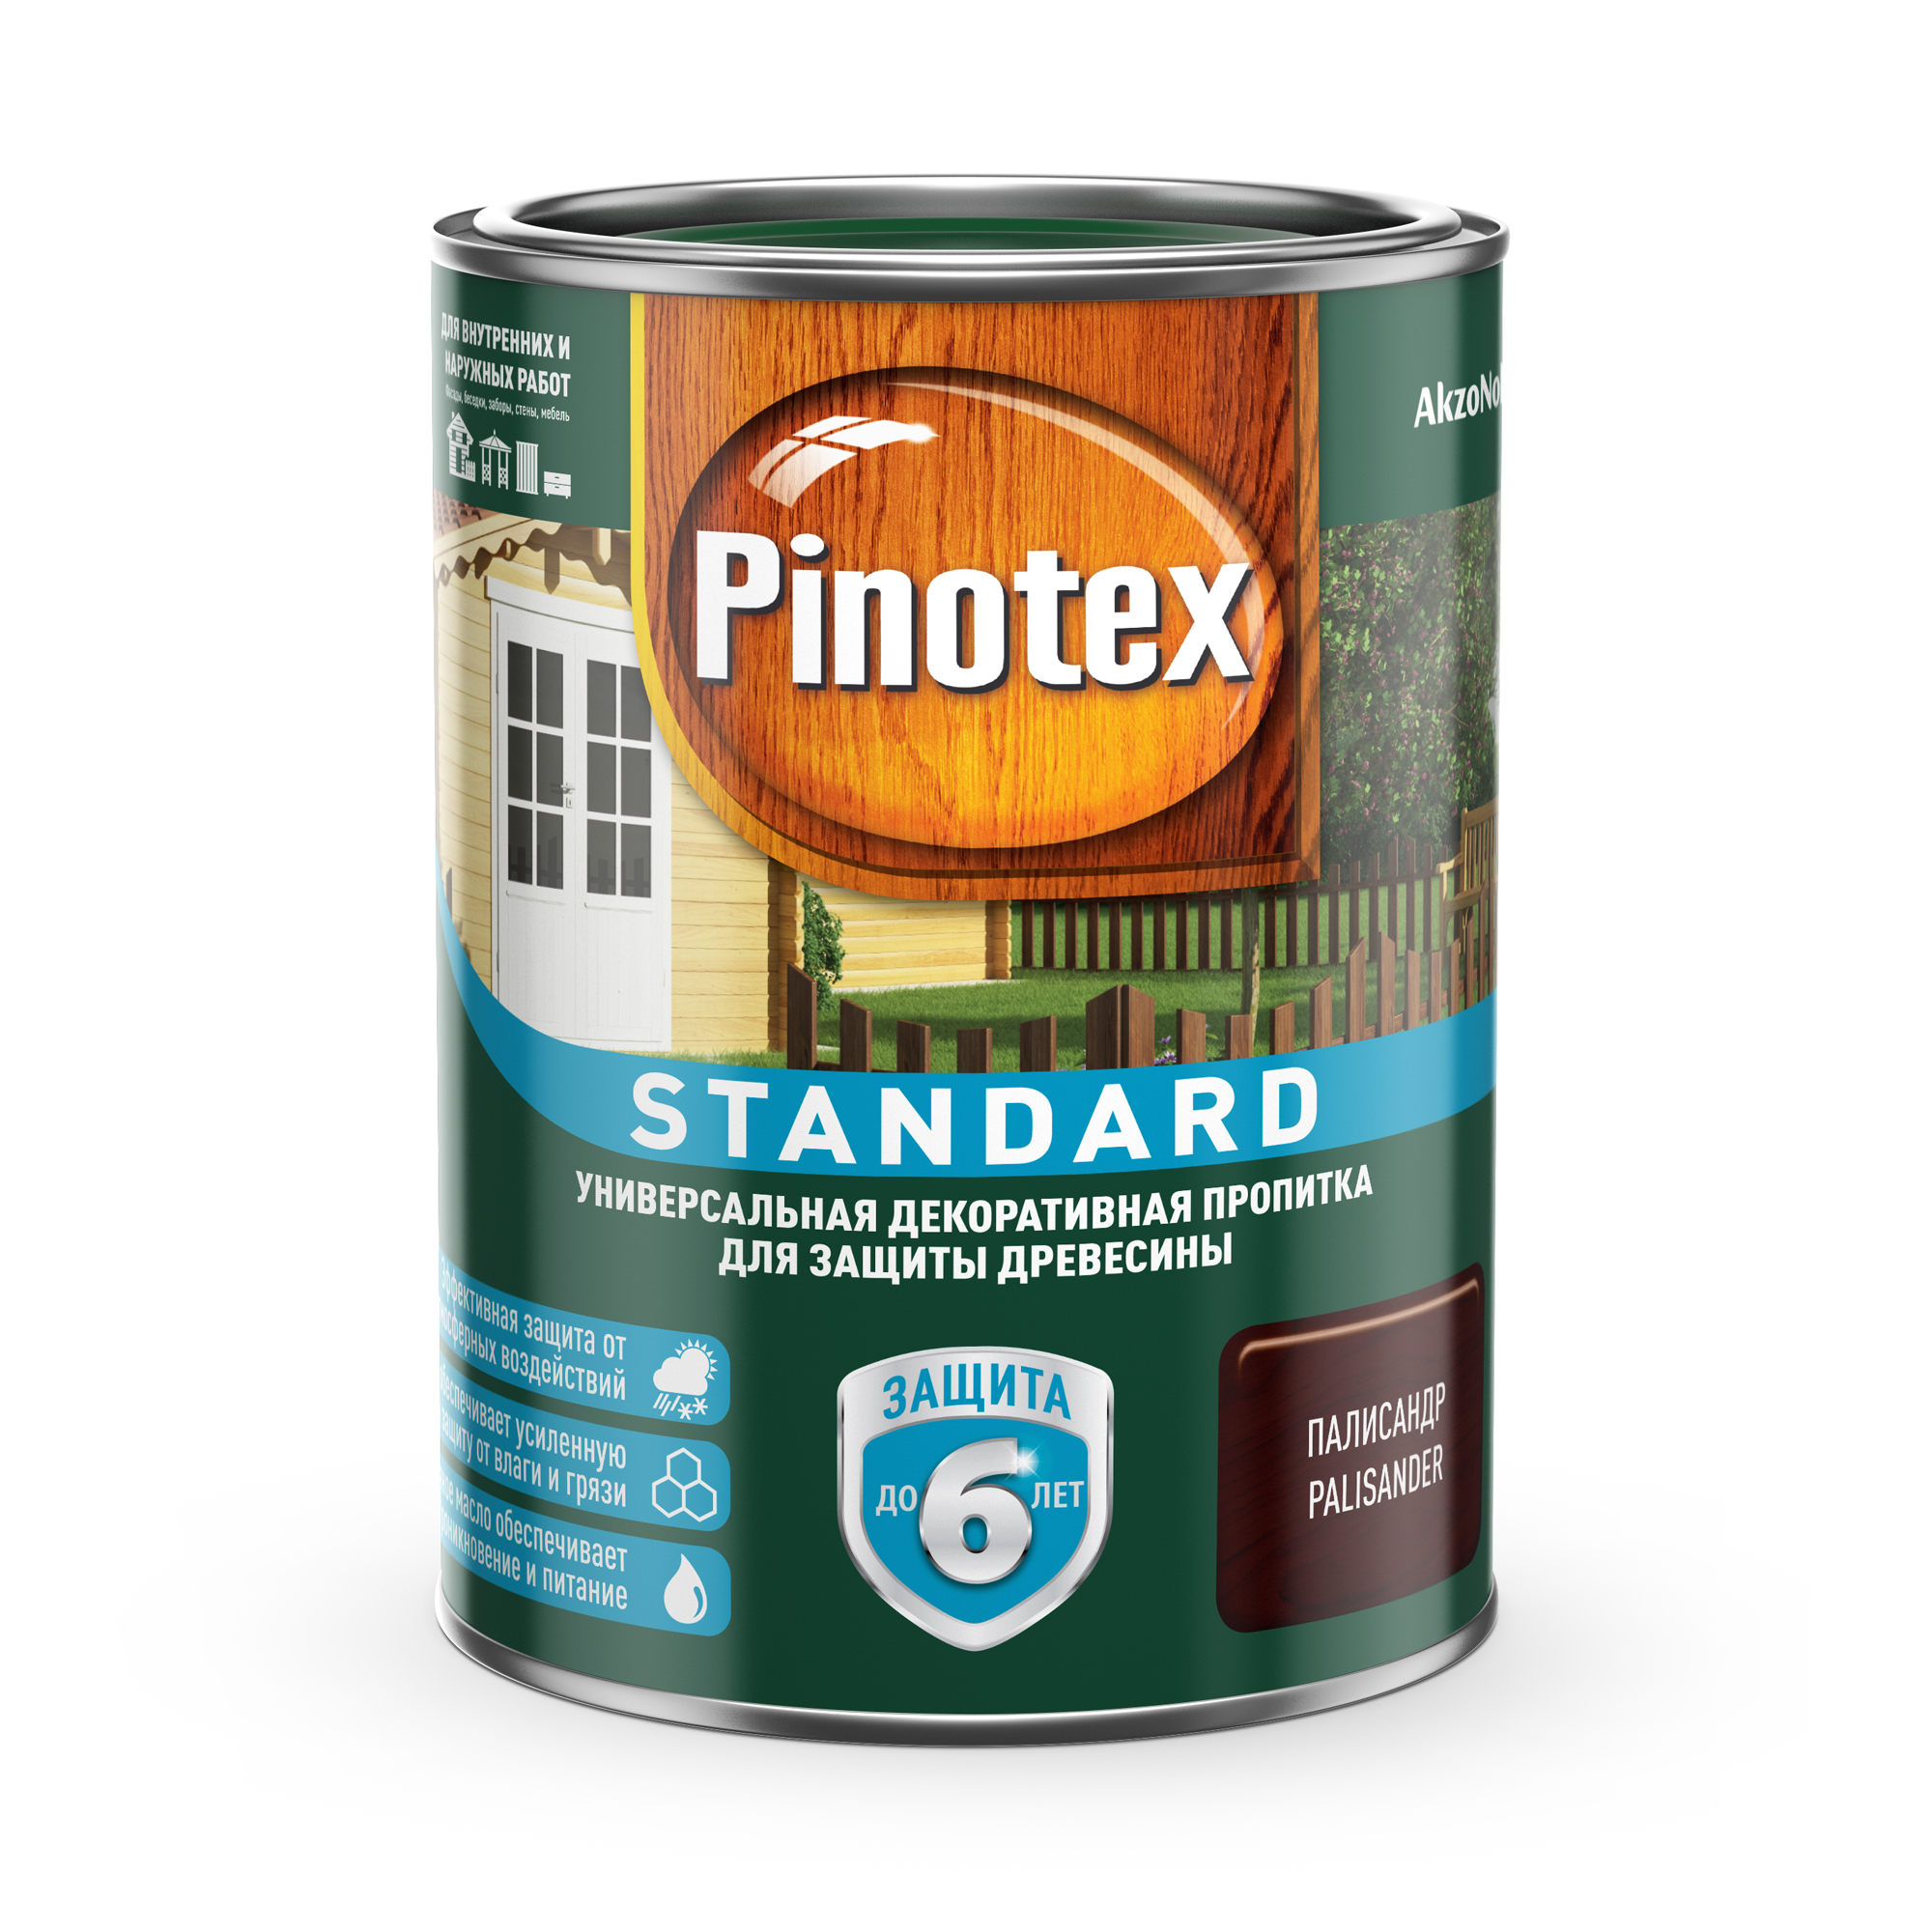 Pinotex стандарт 0.9л палисандр